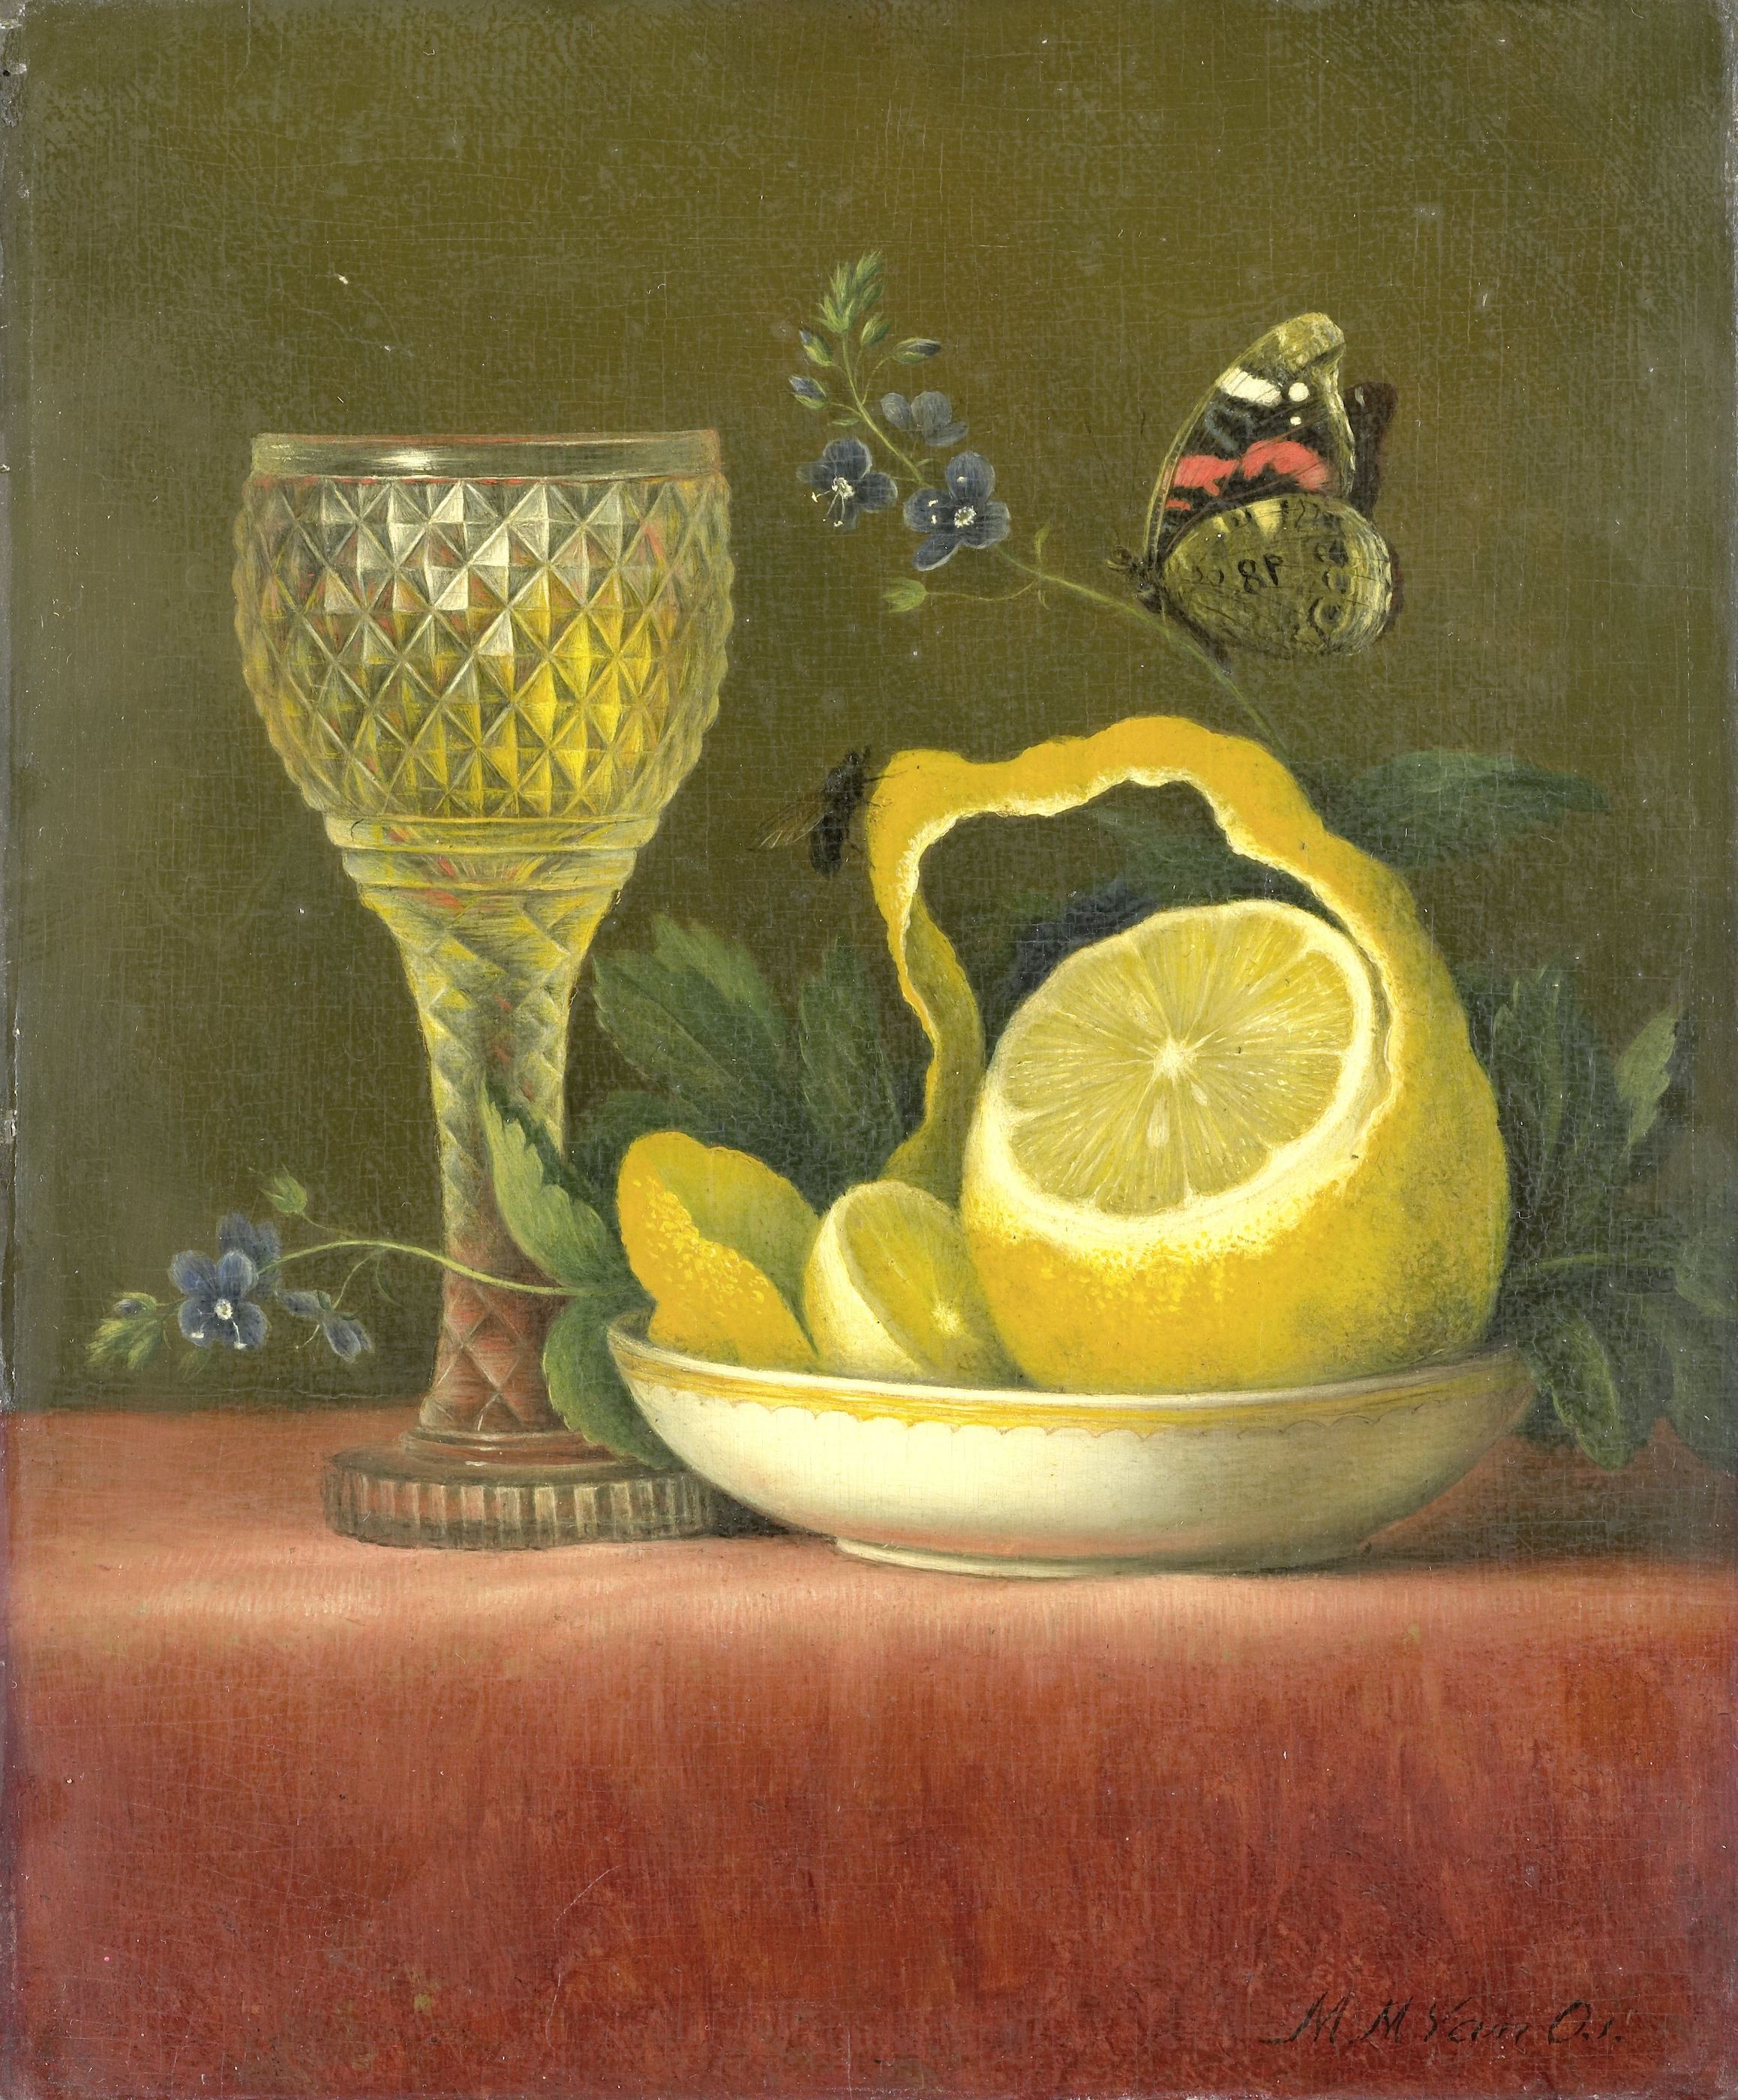 레몬과 크리스탈 잔이 있는 정물 by Maria Margaretha van Os - 1823–1826년 - 27 cm × 23 cm 